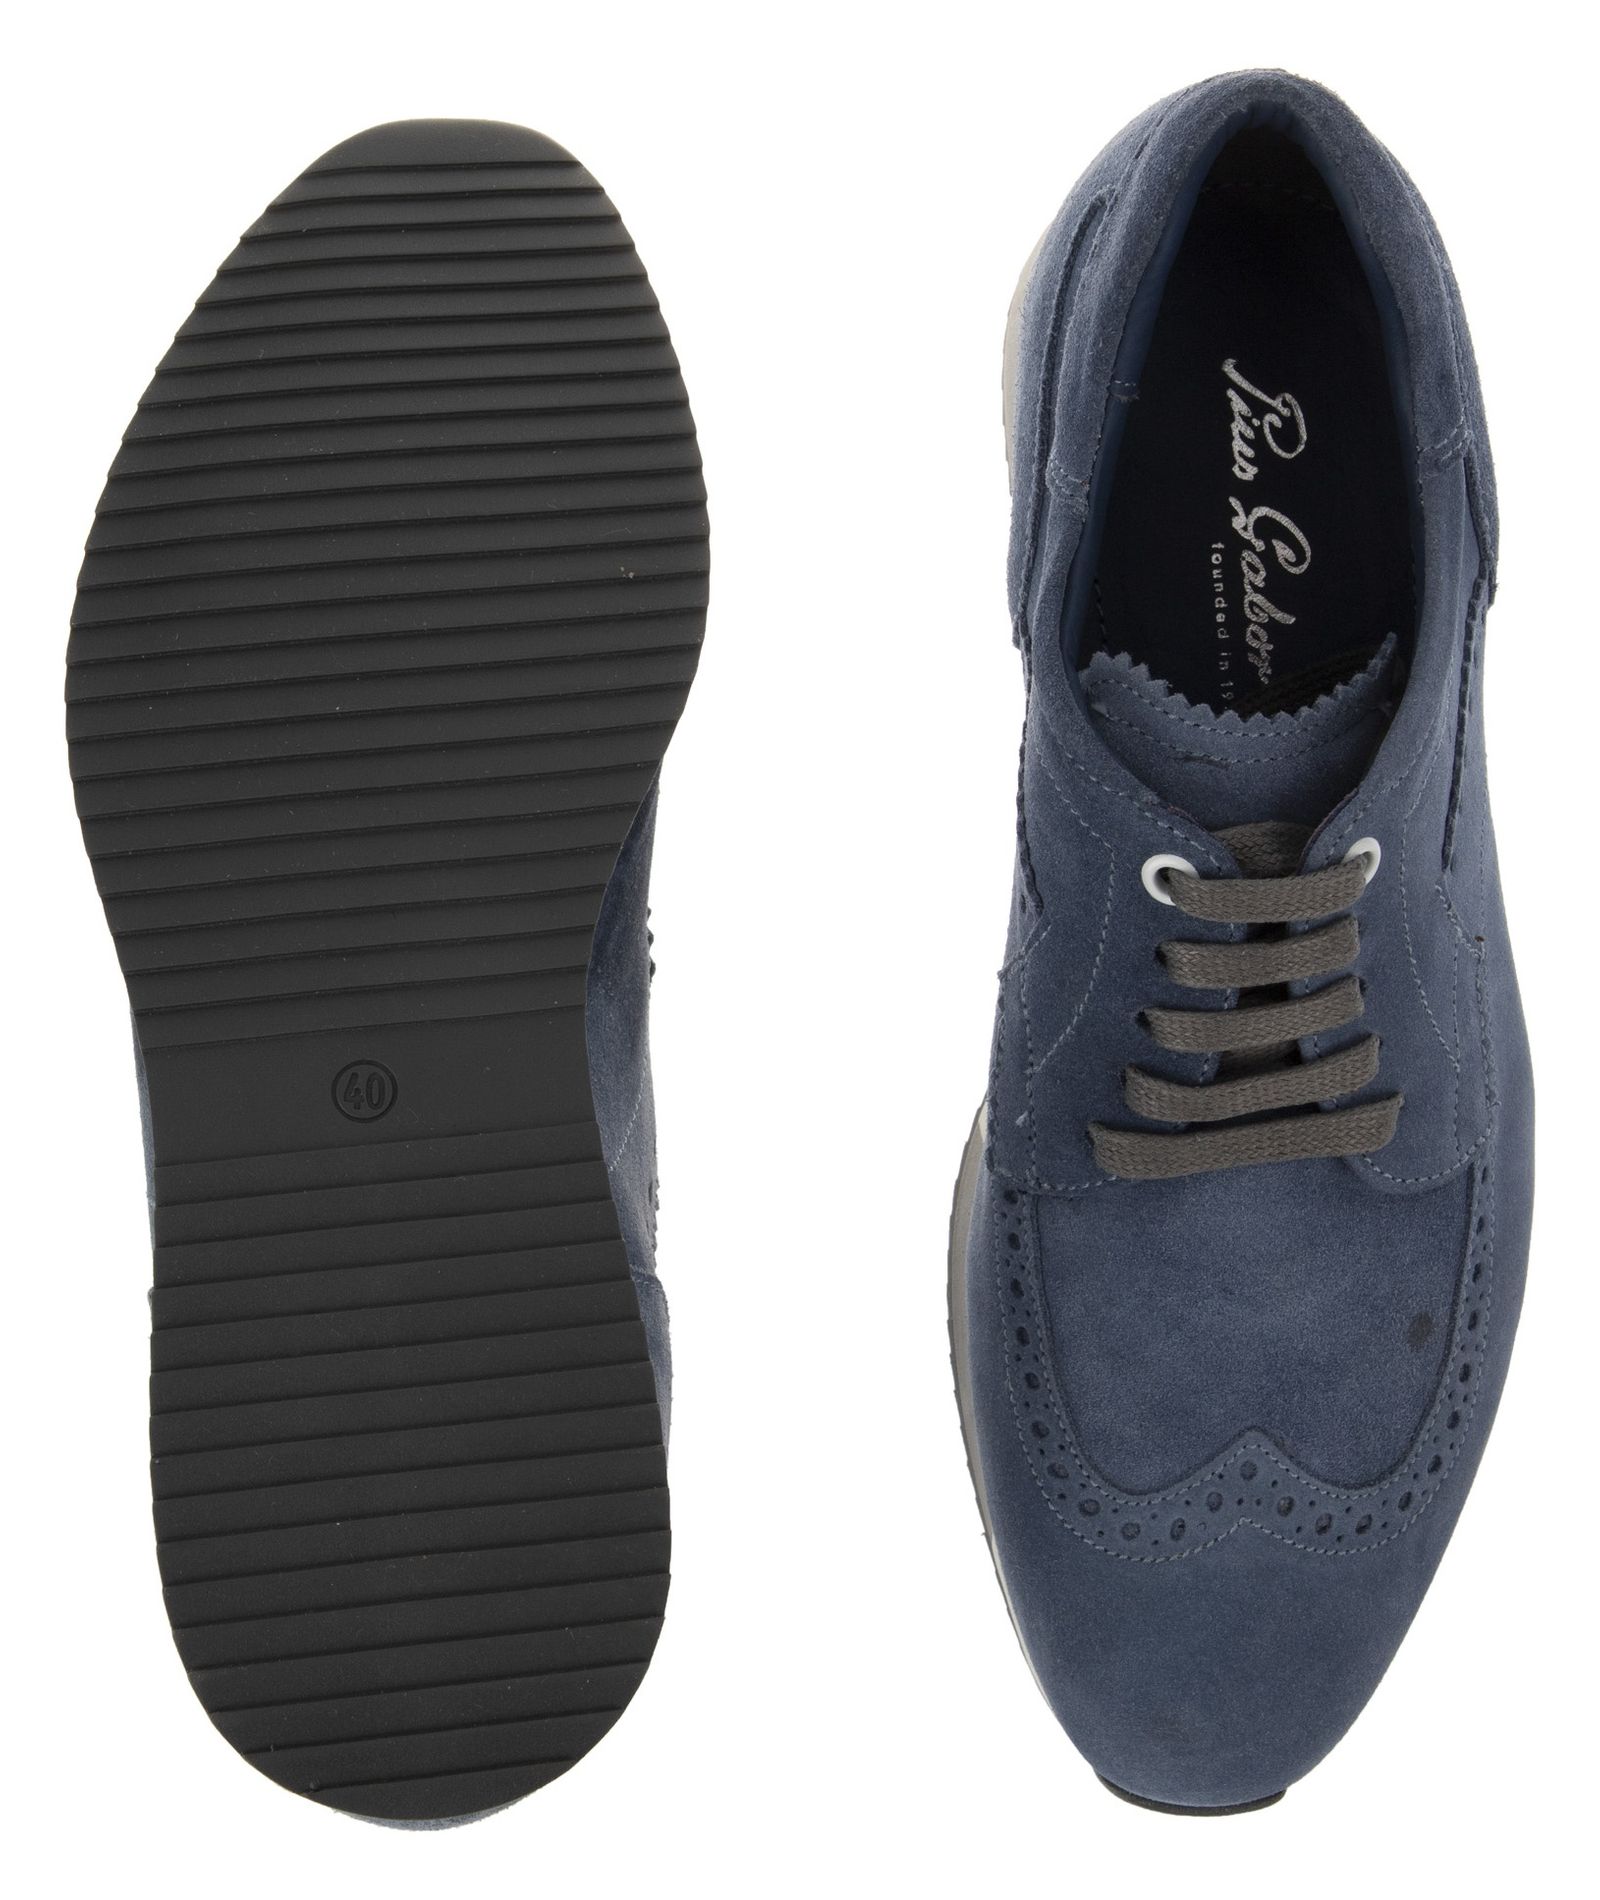 کفش روزمره مردانه گابور مدل 68.275.46 - آبی - 6